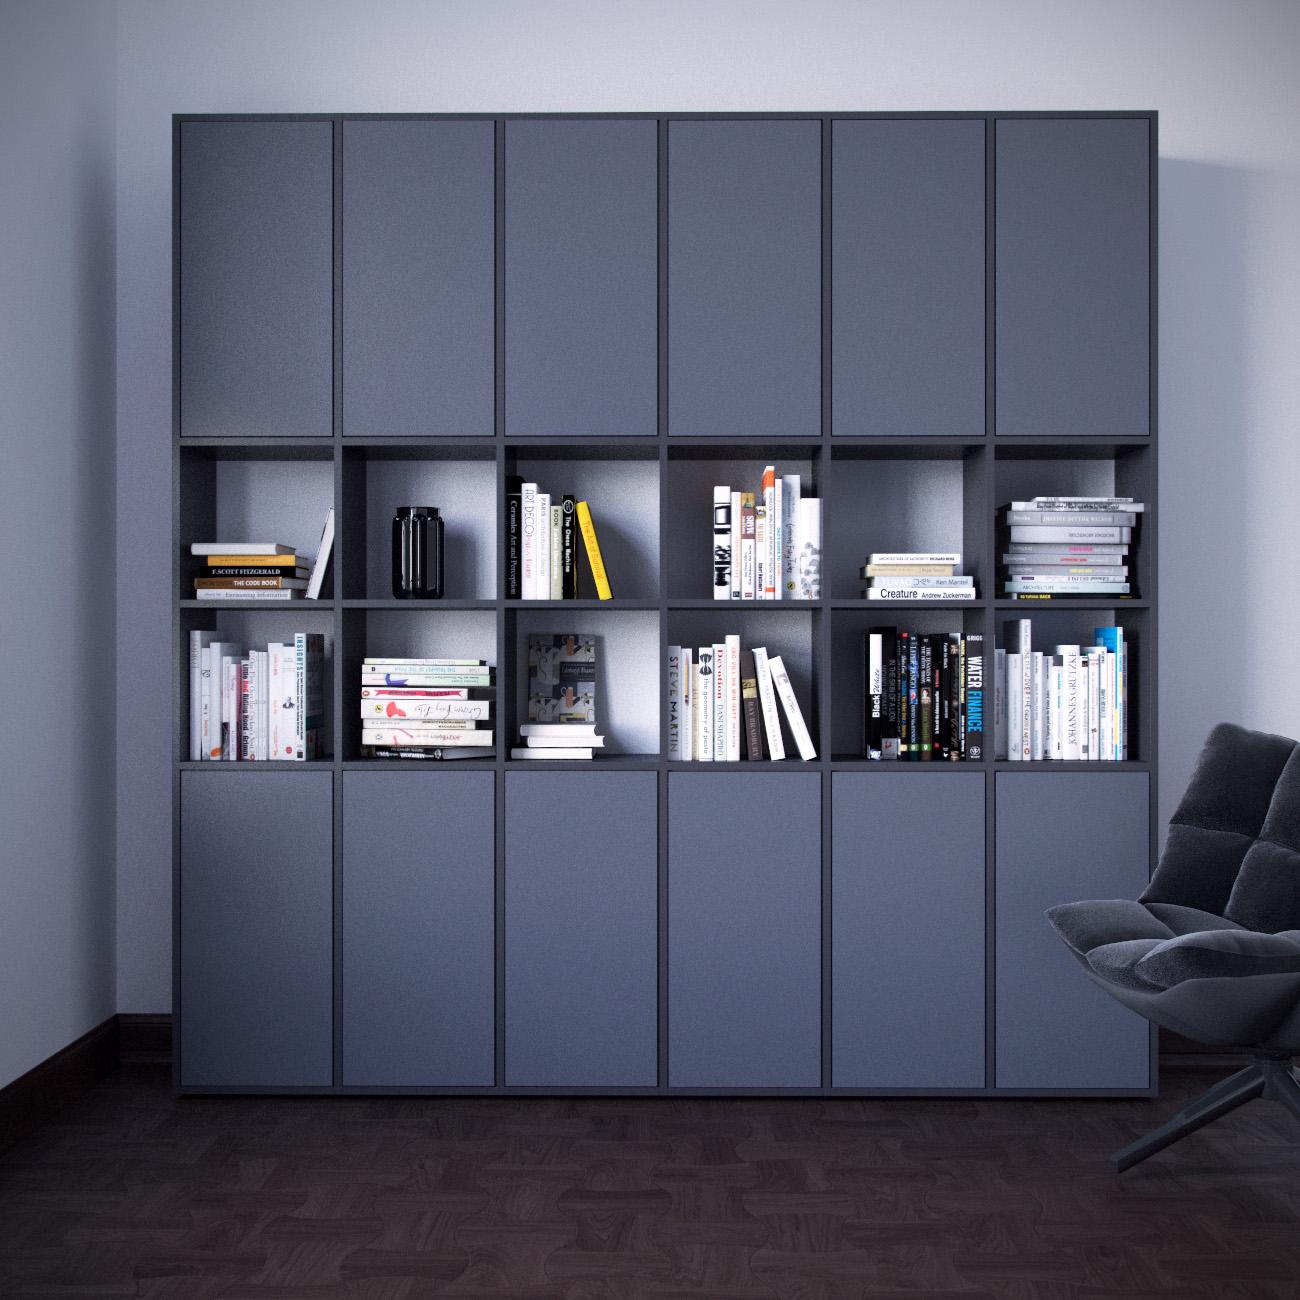 Wohnwand in Grau und Anthrazit #minimalistisch #schrankwand #wohnwand #skandinavischesdesign ©mycs GmbH